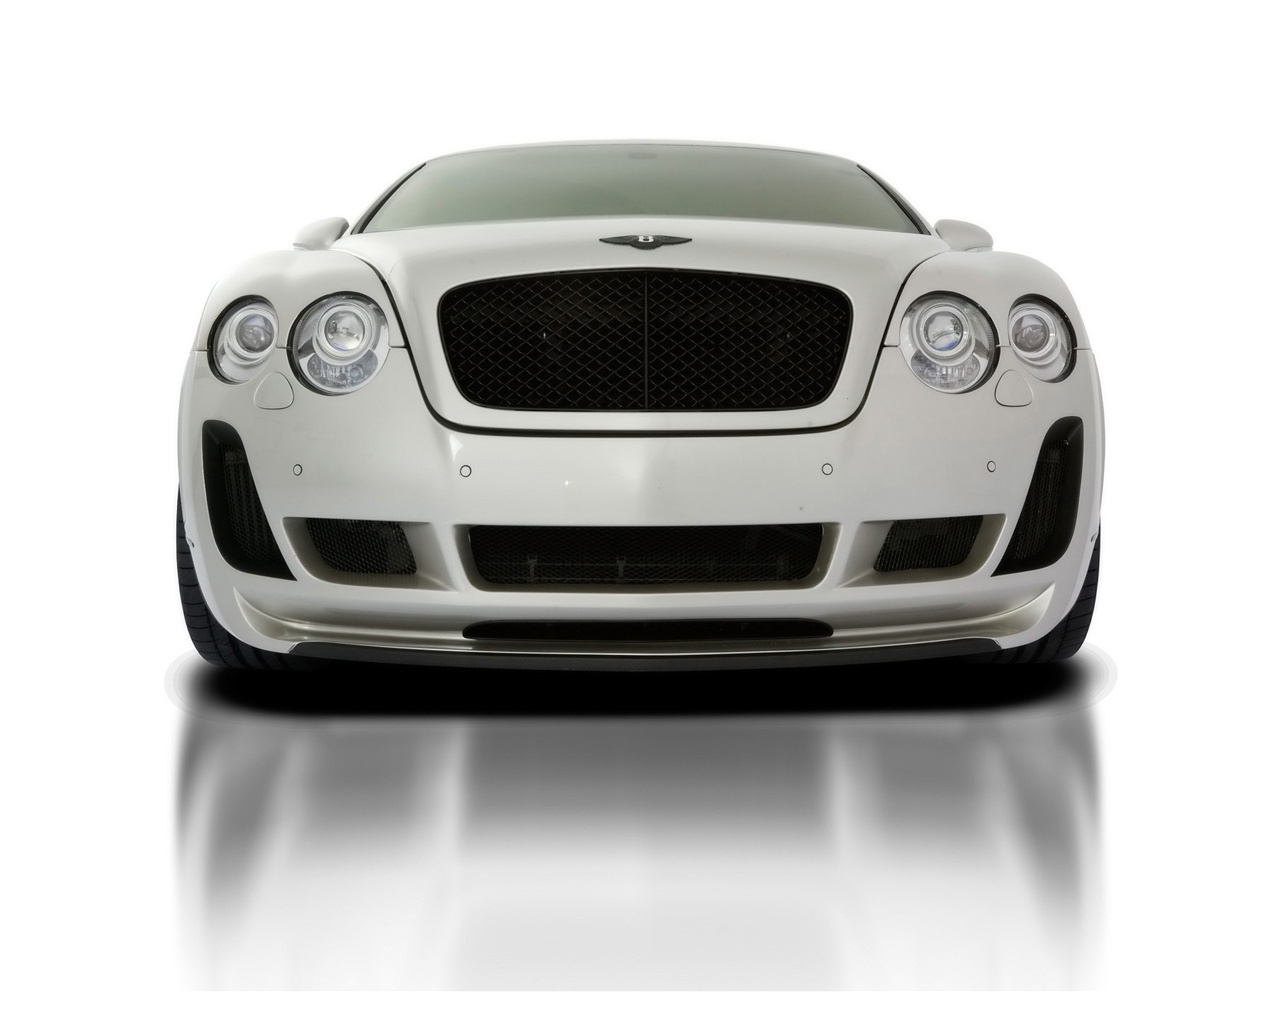 2010 Vorsteiner Bentley Continental GT BR9 Edition for 1280 x 1024 resolution